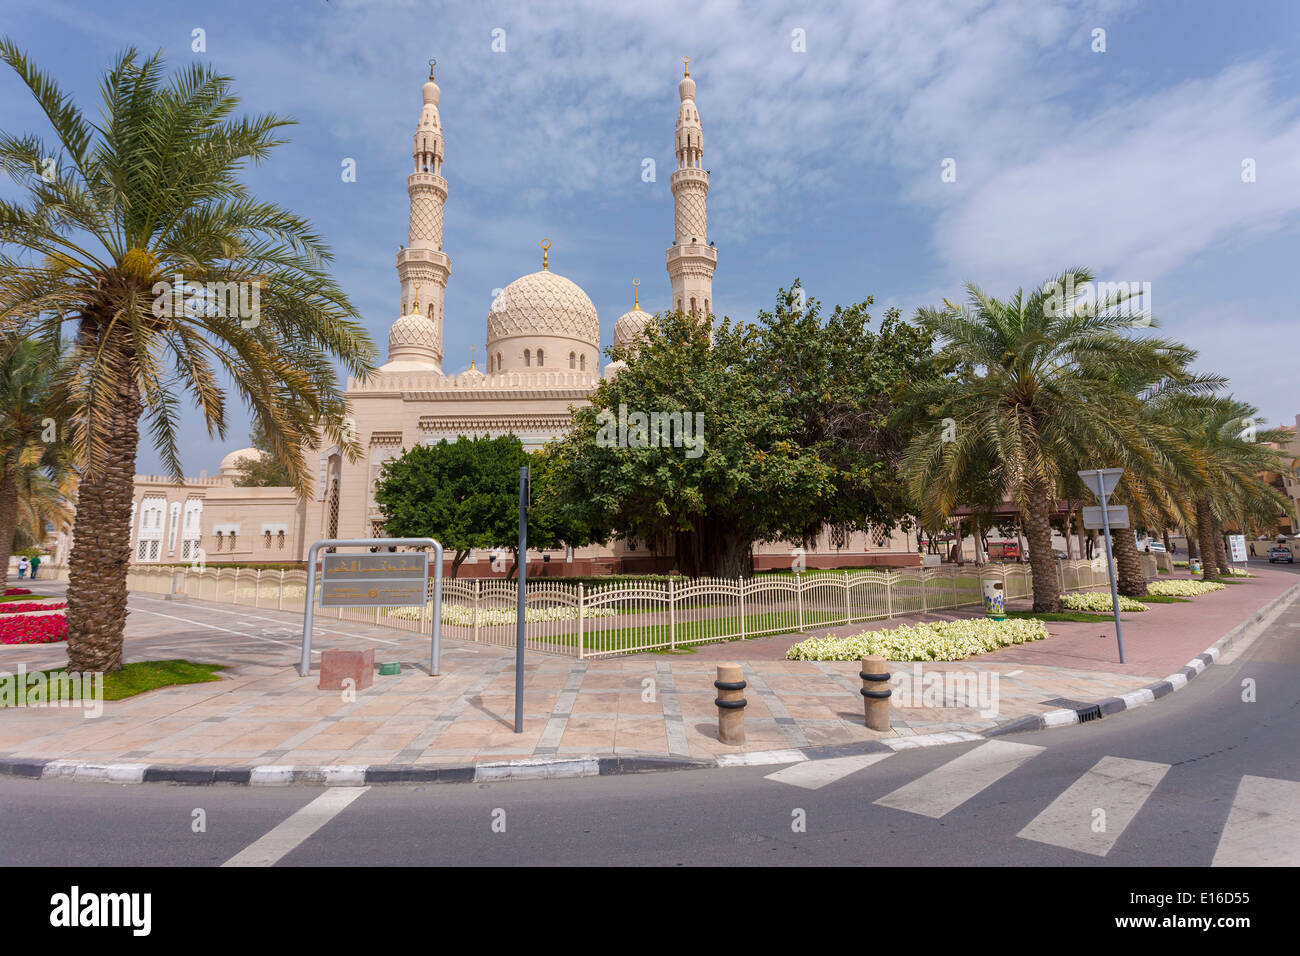 Jumeirah Moschee, ein herrliches Beispiel moderner islamischer Architektur, Dubai, Vereinigte Arabische Emirate Stockfoto